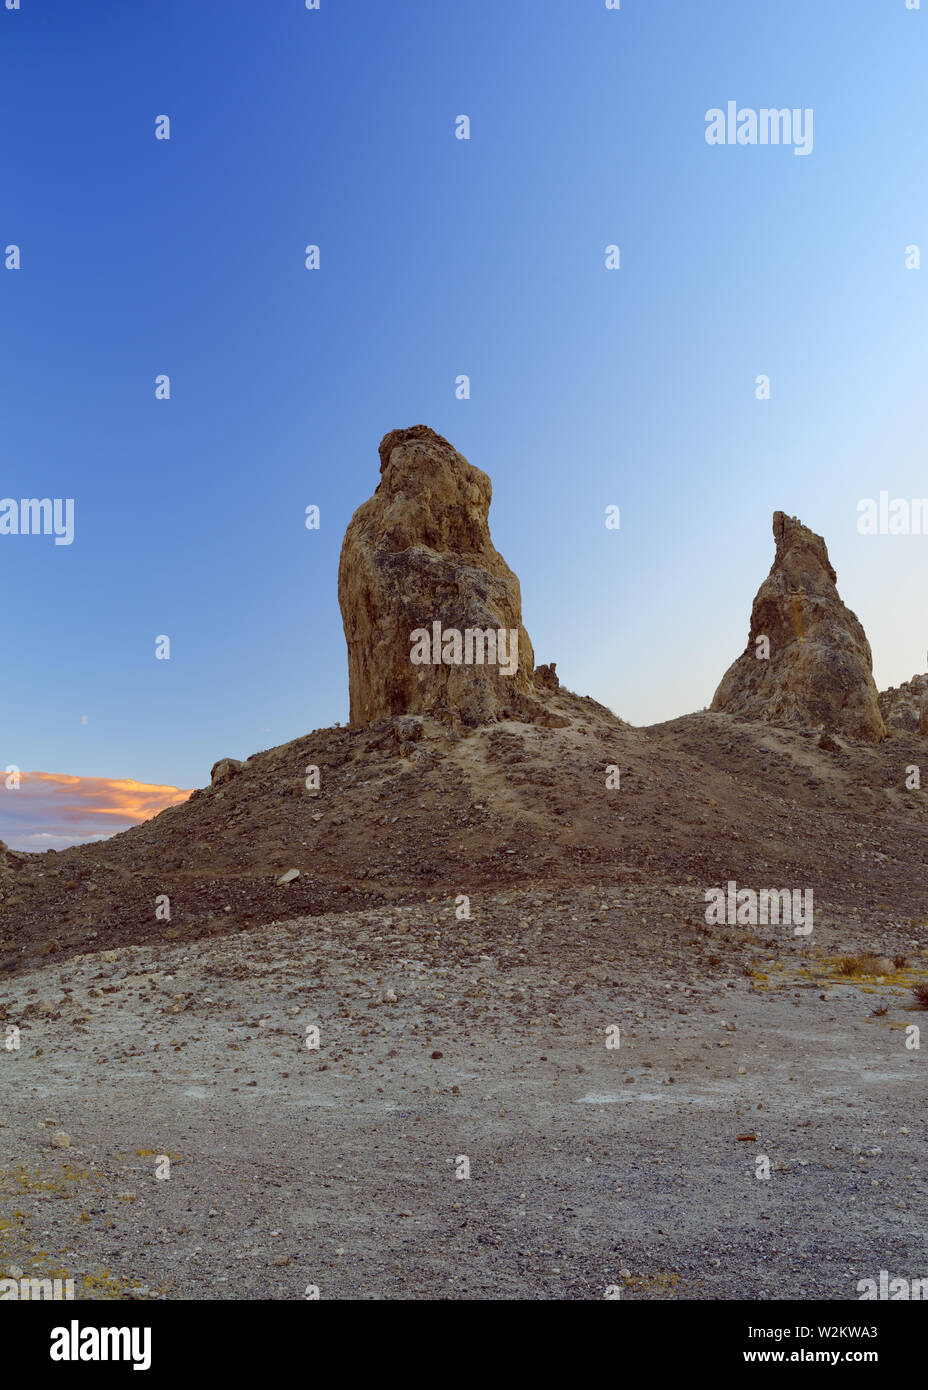 Image de la célèbre Trona Pinnacles, une caractéristique géologique dans le désert californien National Conservation Area. Banque D'Images